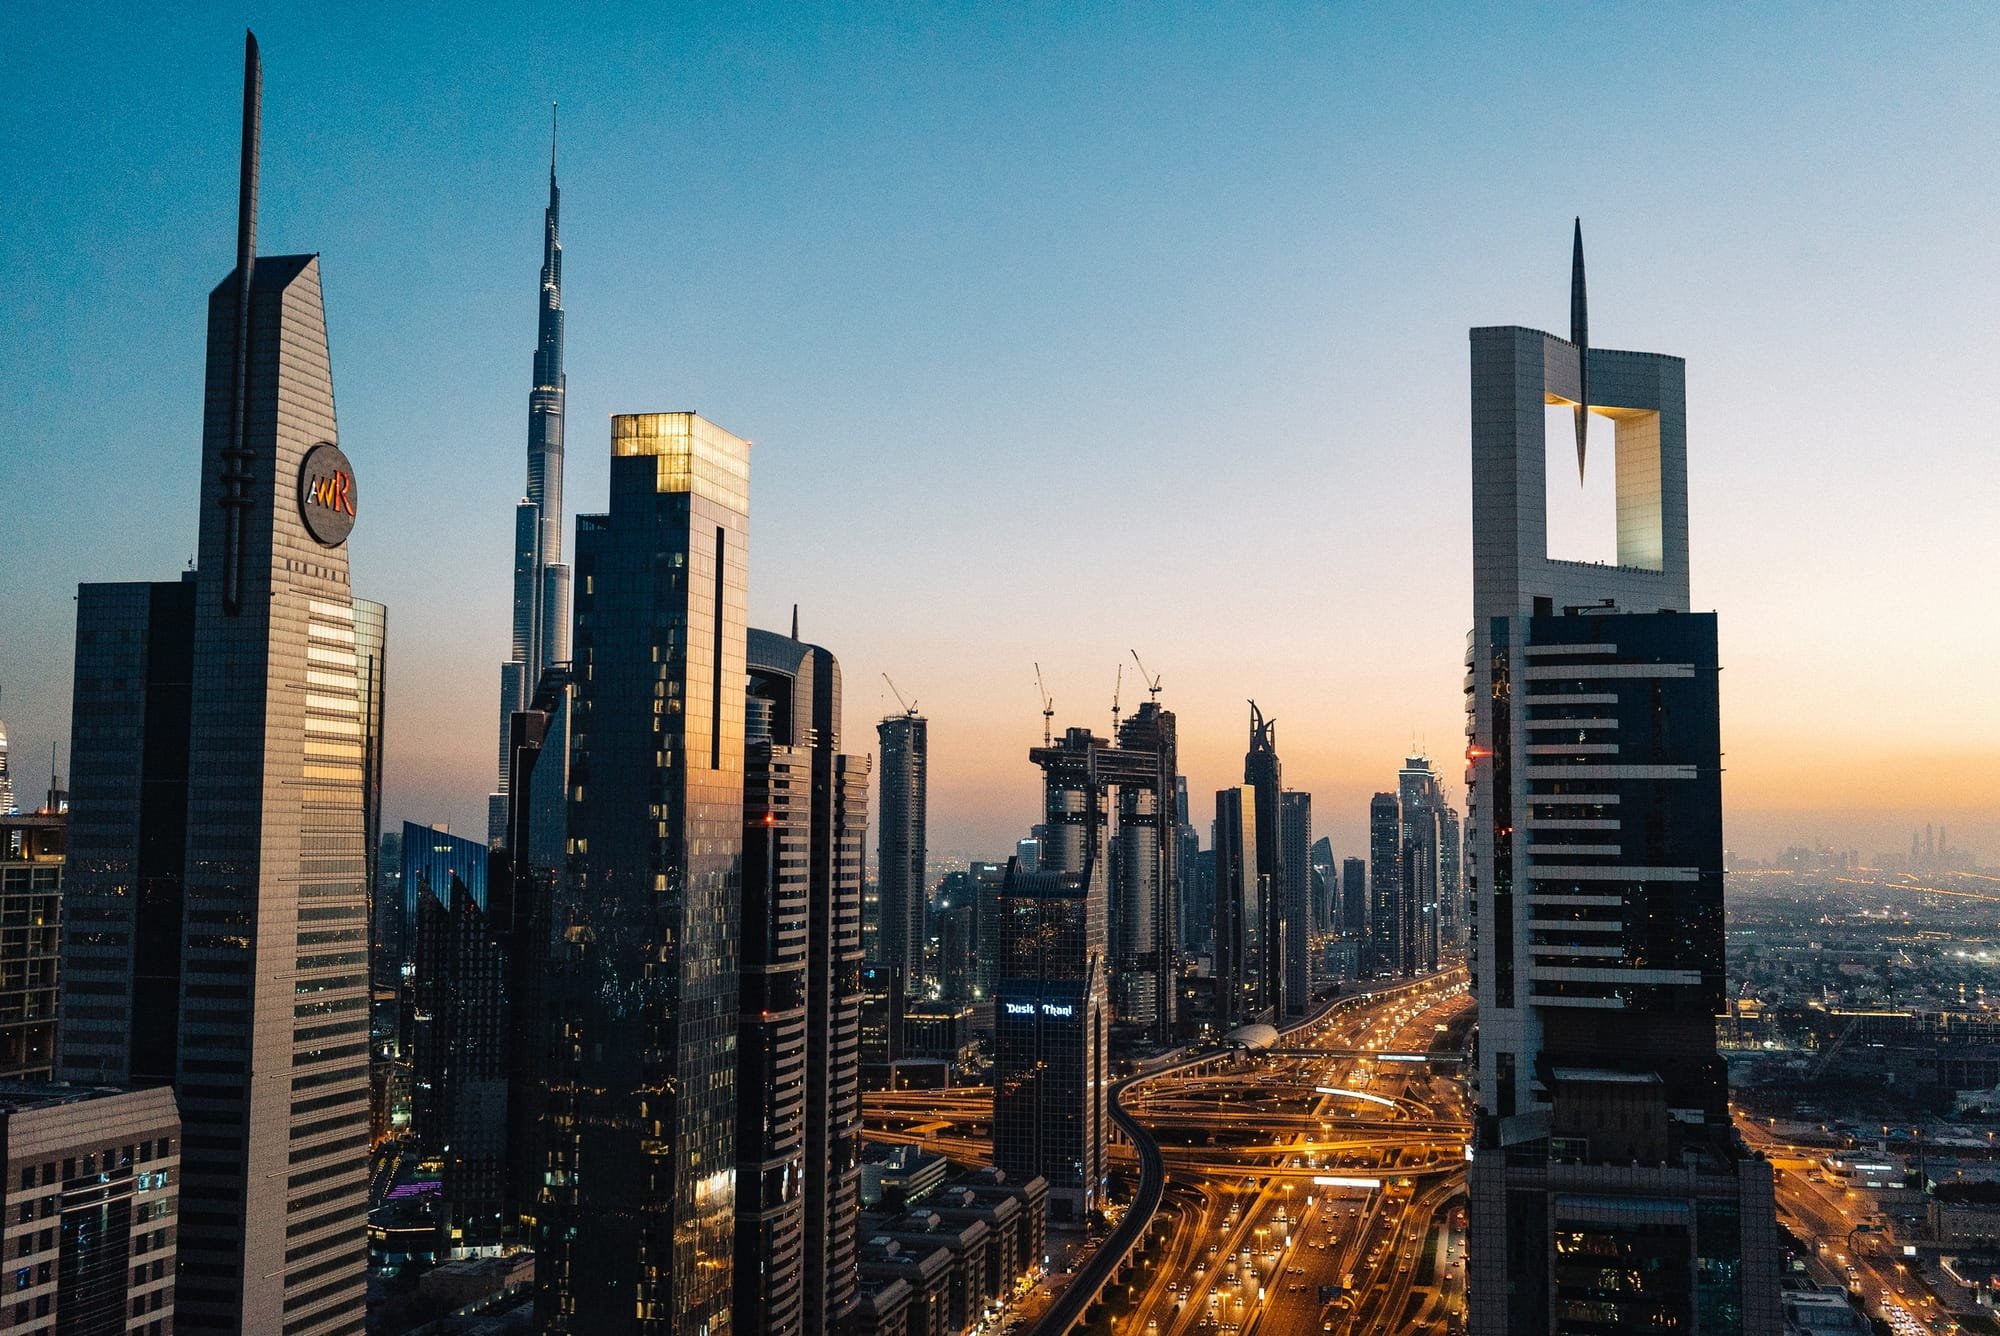 The future of Dubai